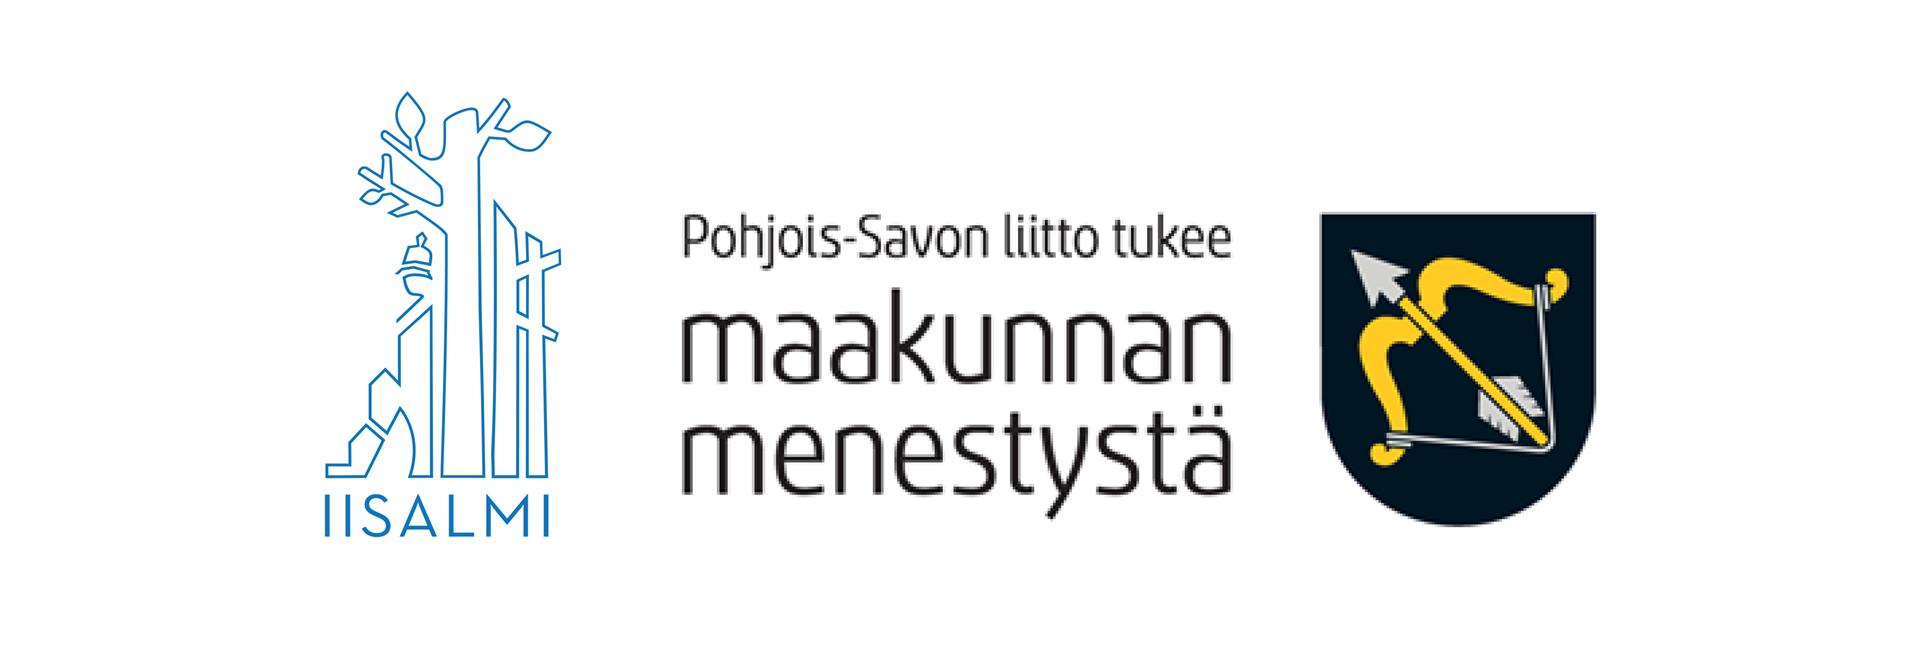 Iisalmen kaupungin logo sekä Pohjois-Savon liiton logo